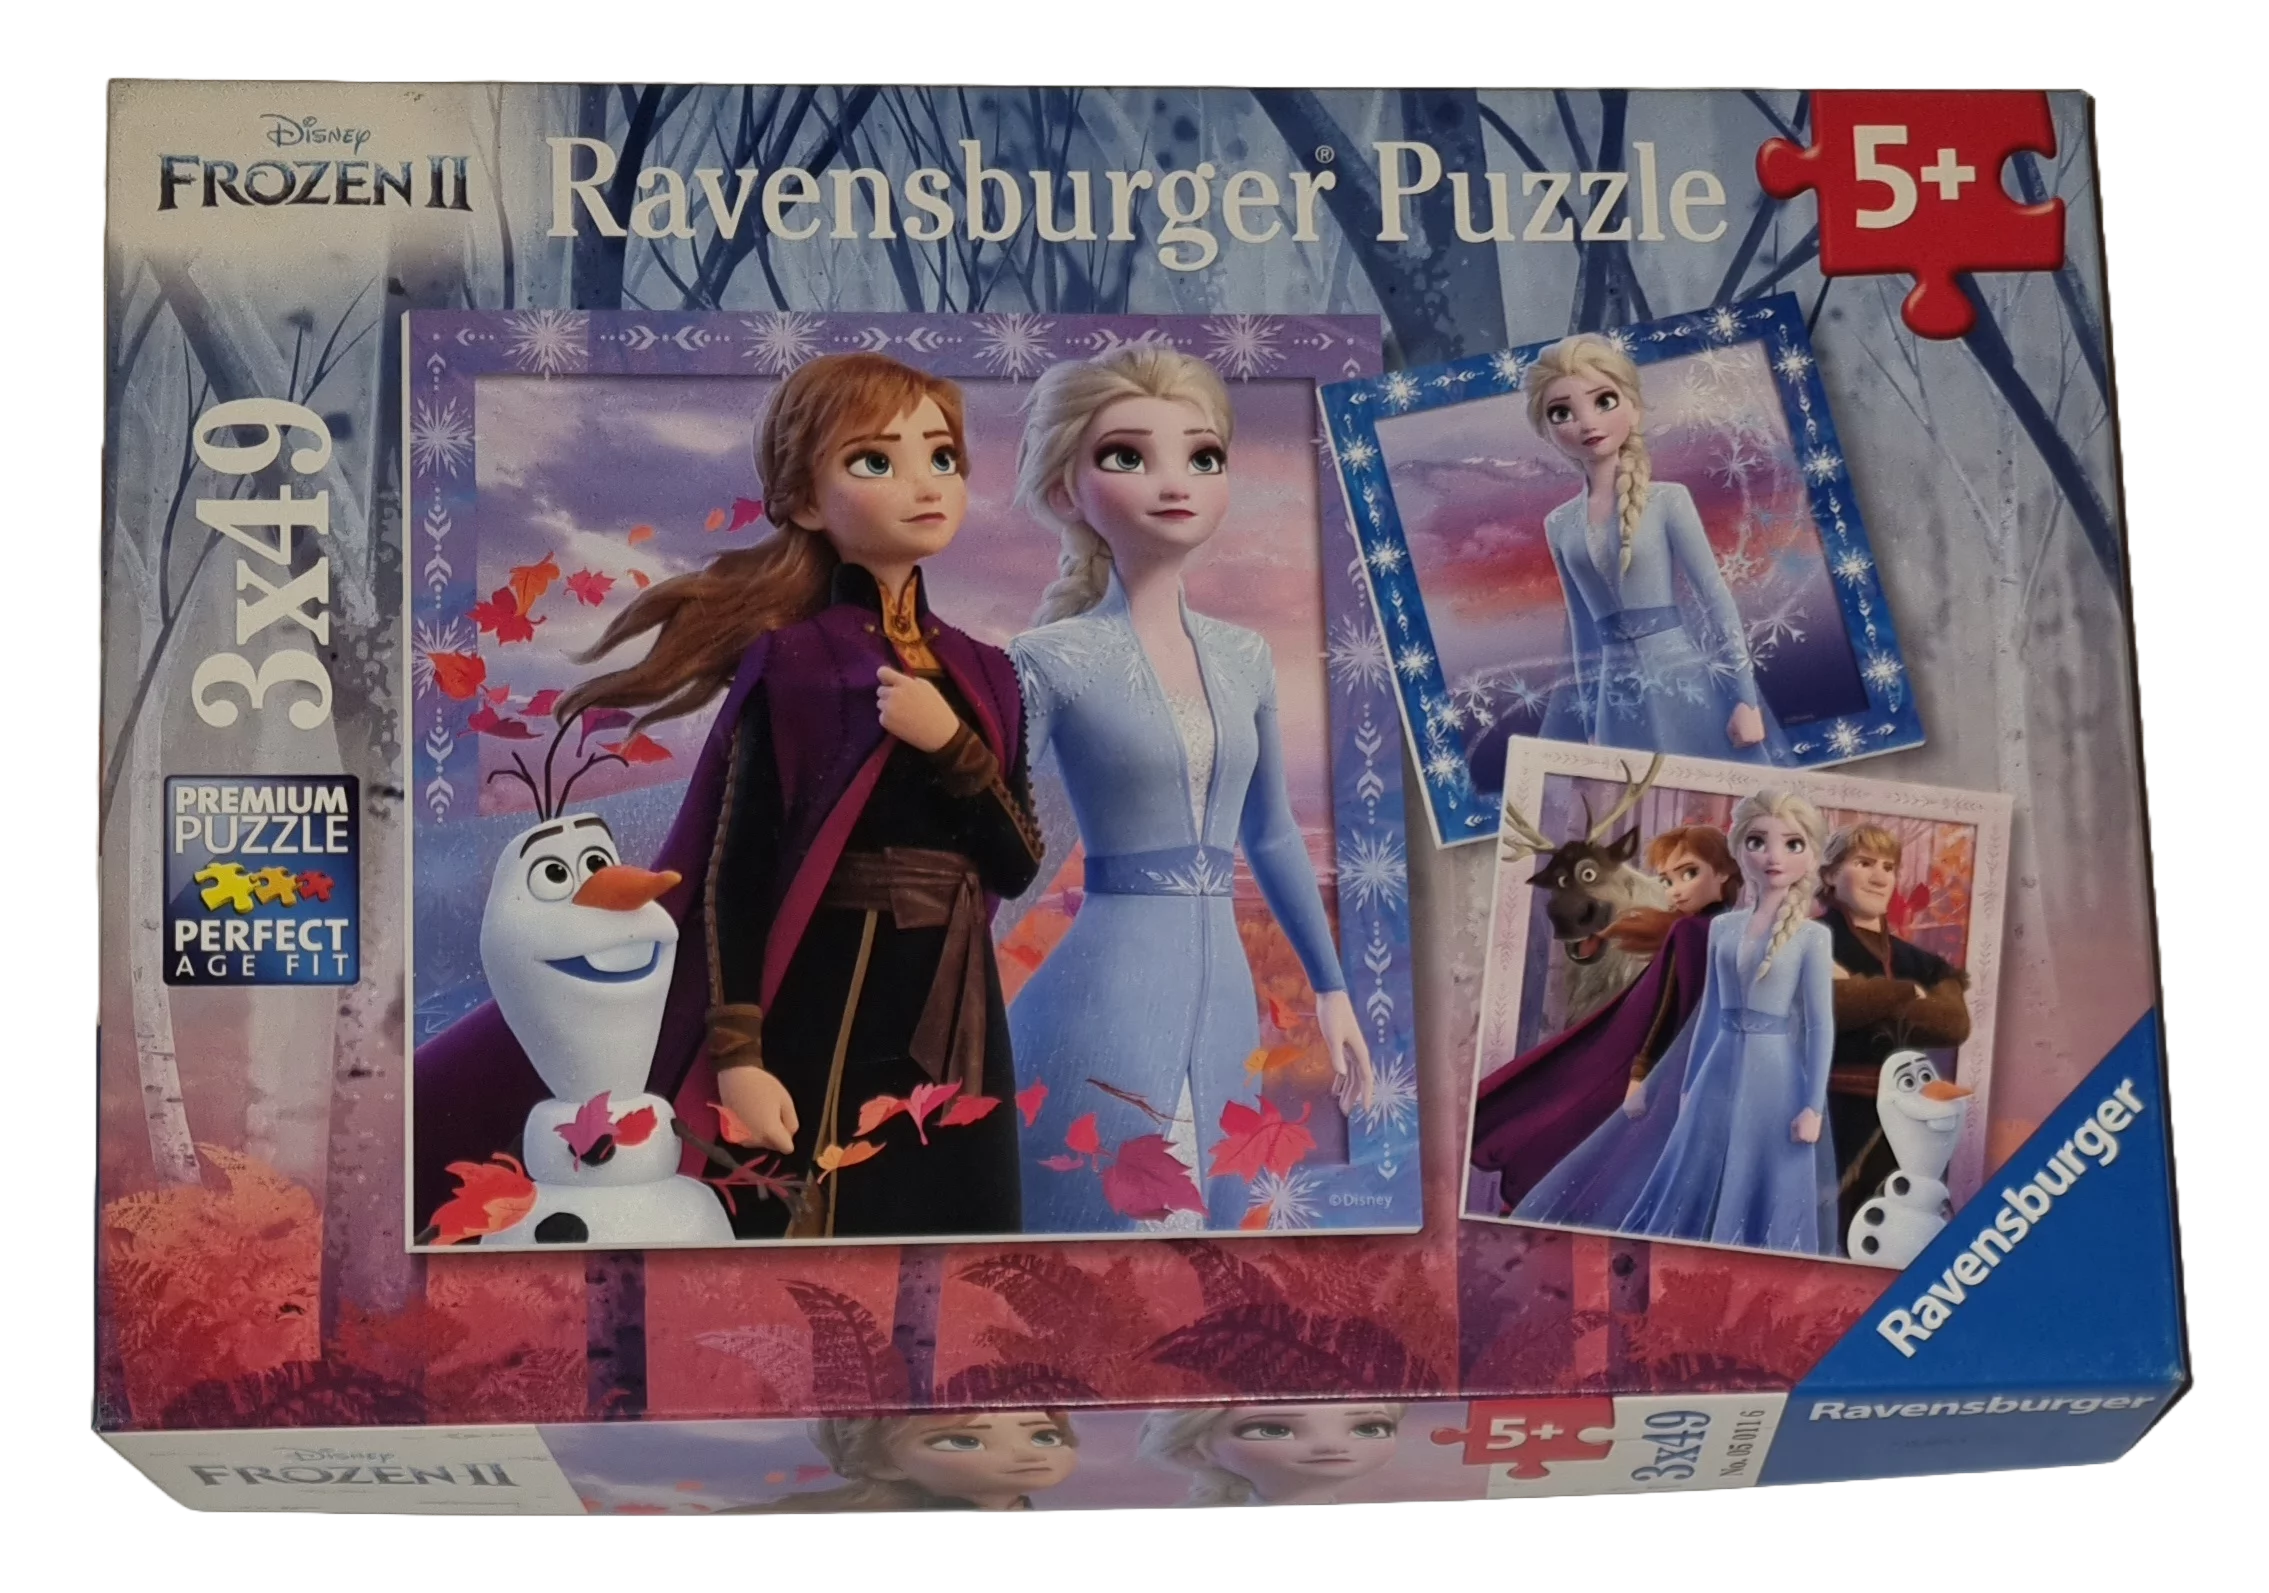 Ravensburger Premium Puzzle Disney Puzzle Die Reise beginnt 3 x 49 Teile Puzzle 050116